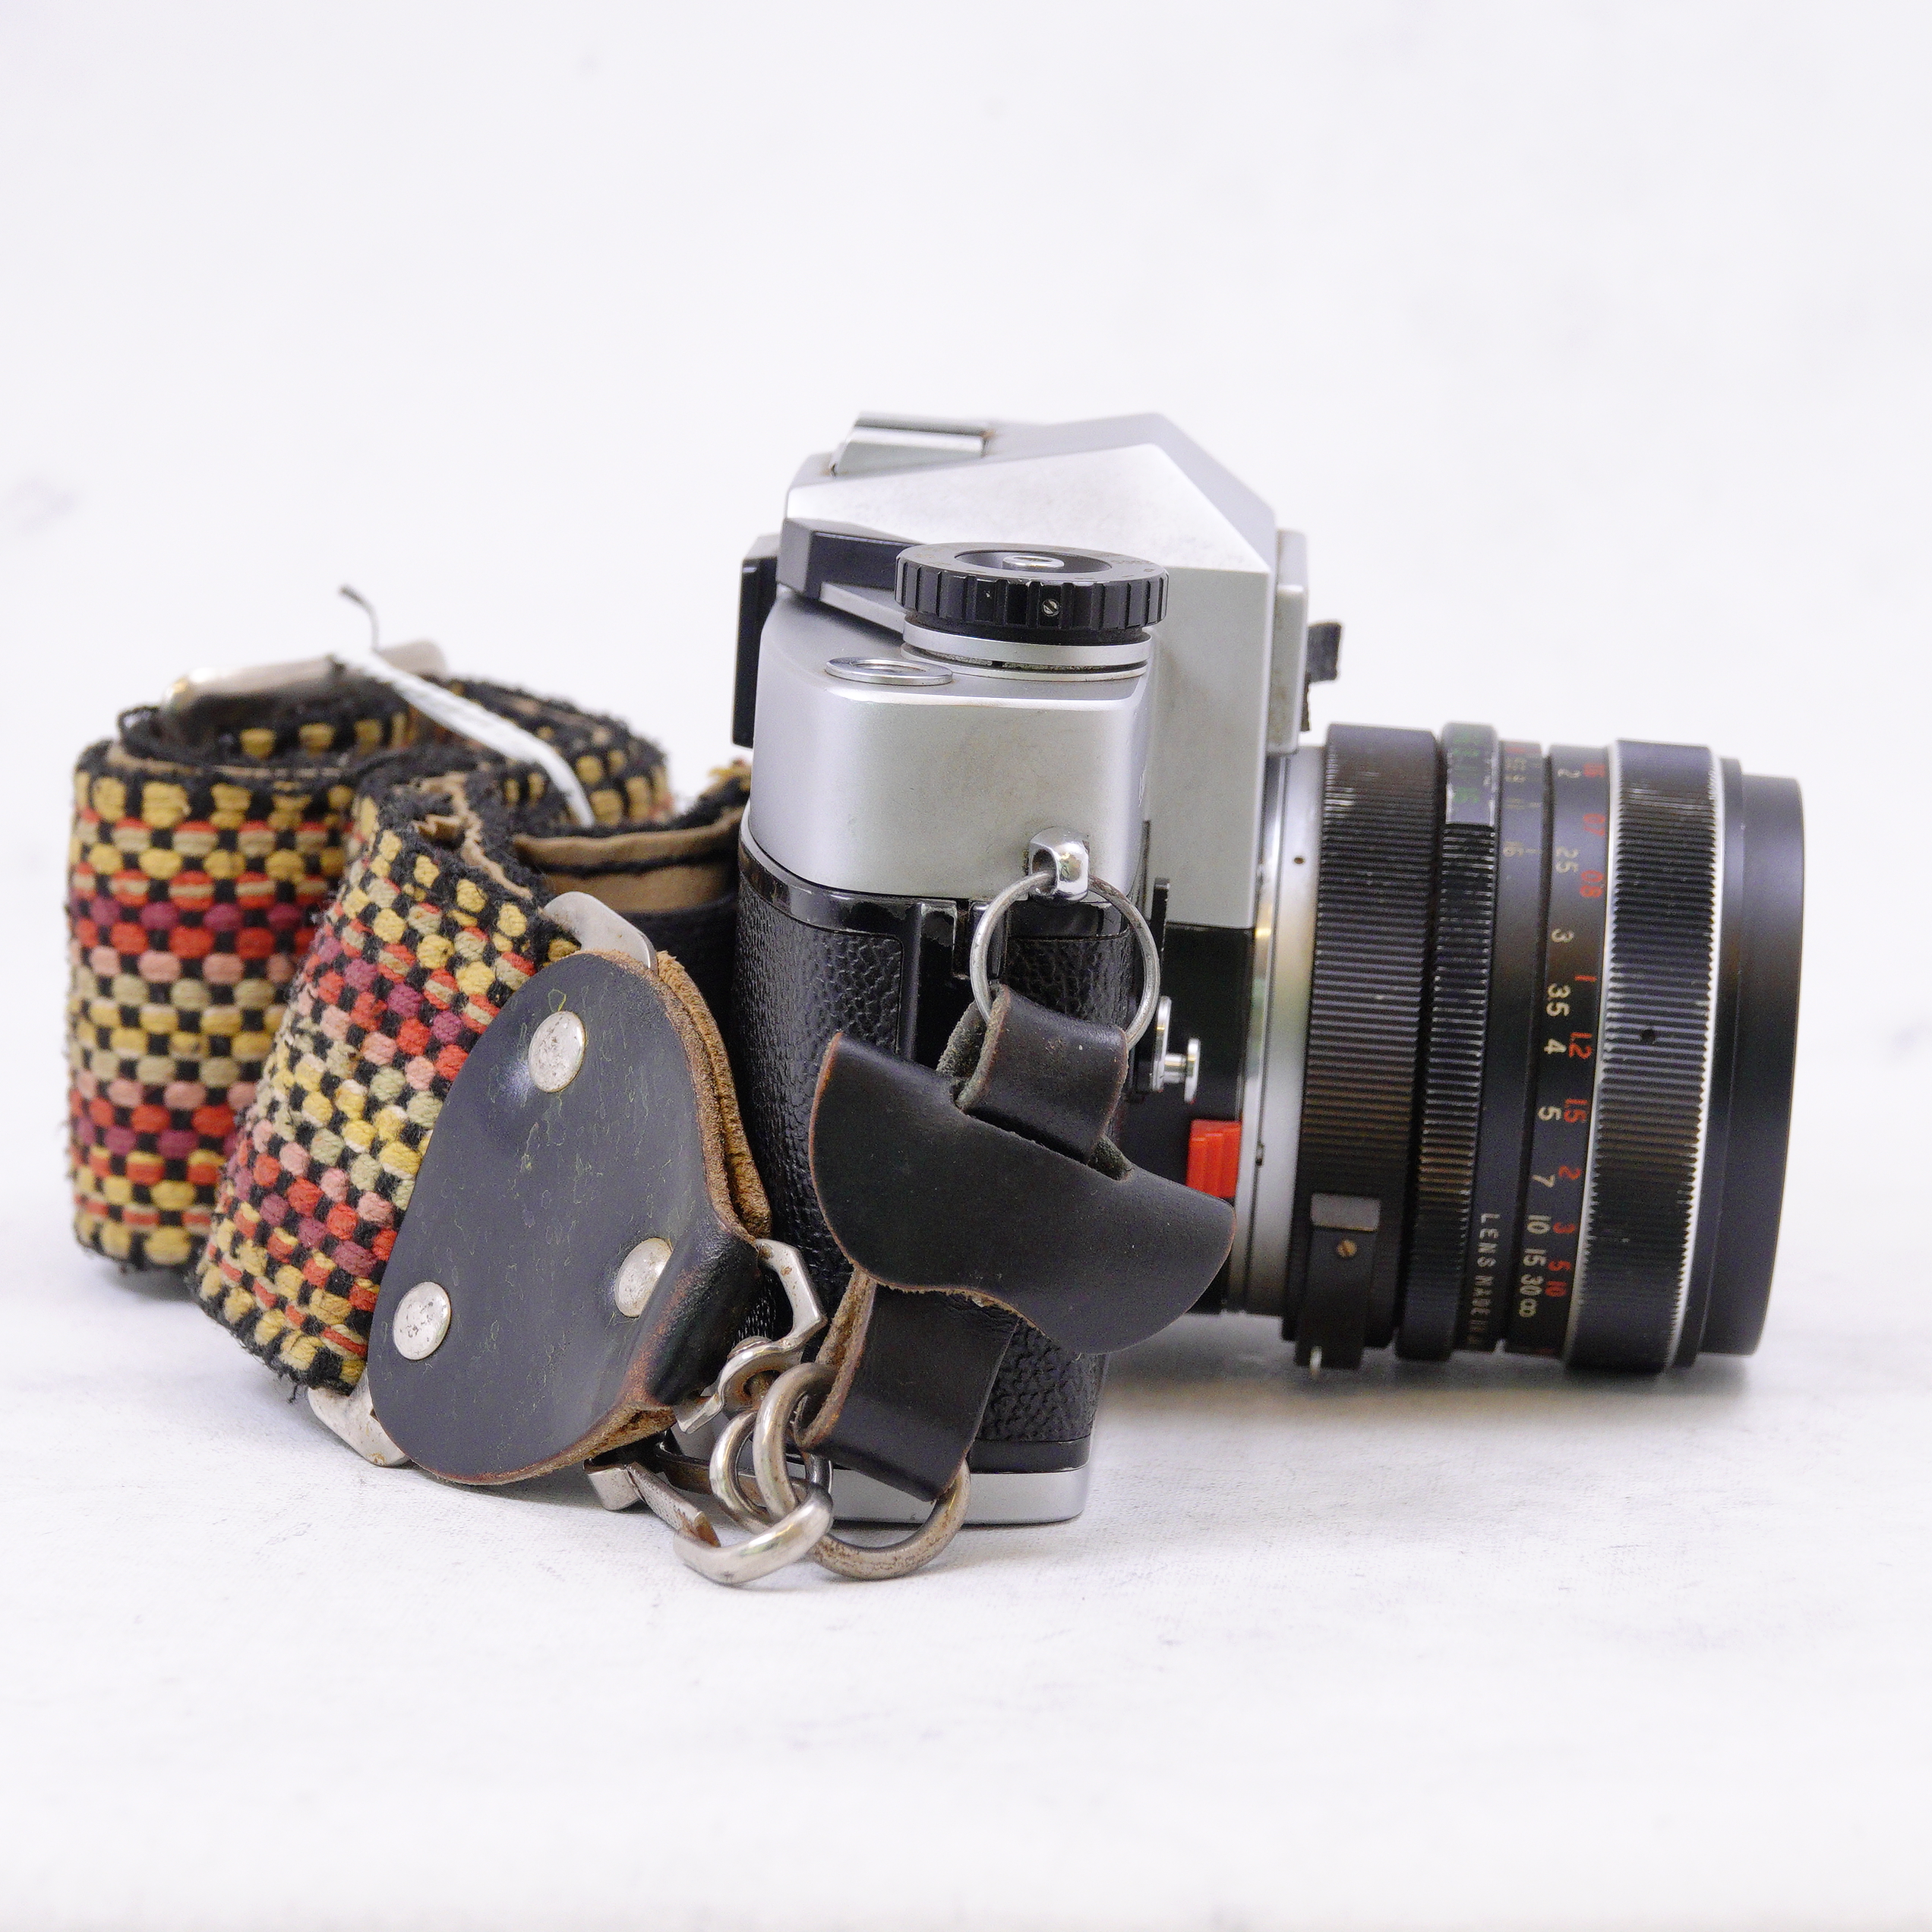 Leicaflex SL con lente Vivitar 28mm f2.8 y correa - Usado